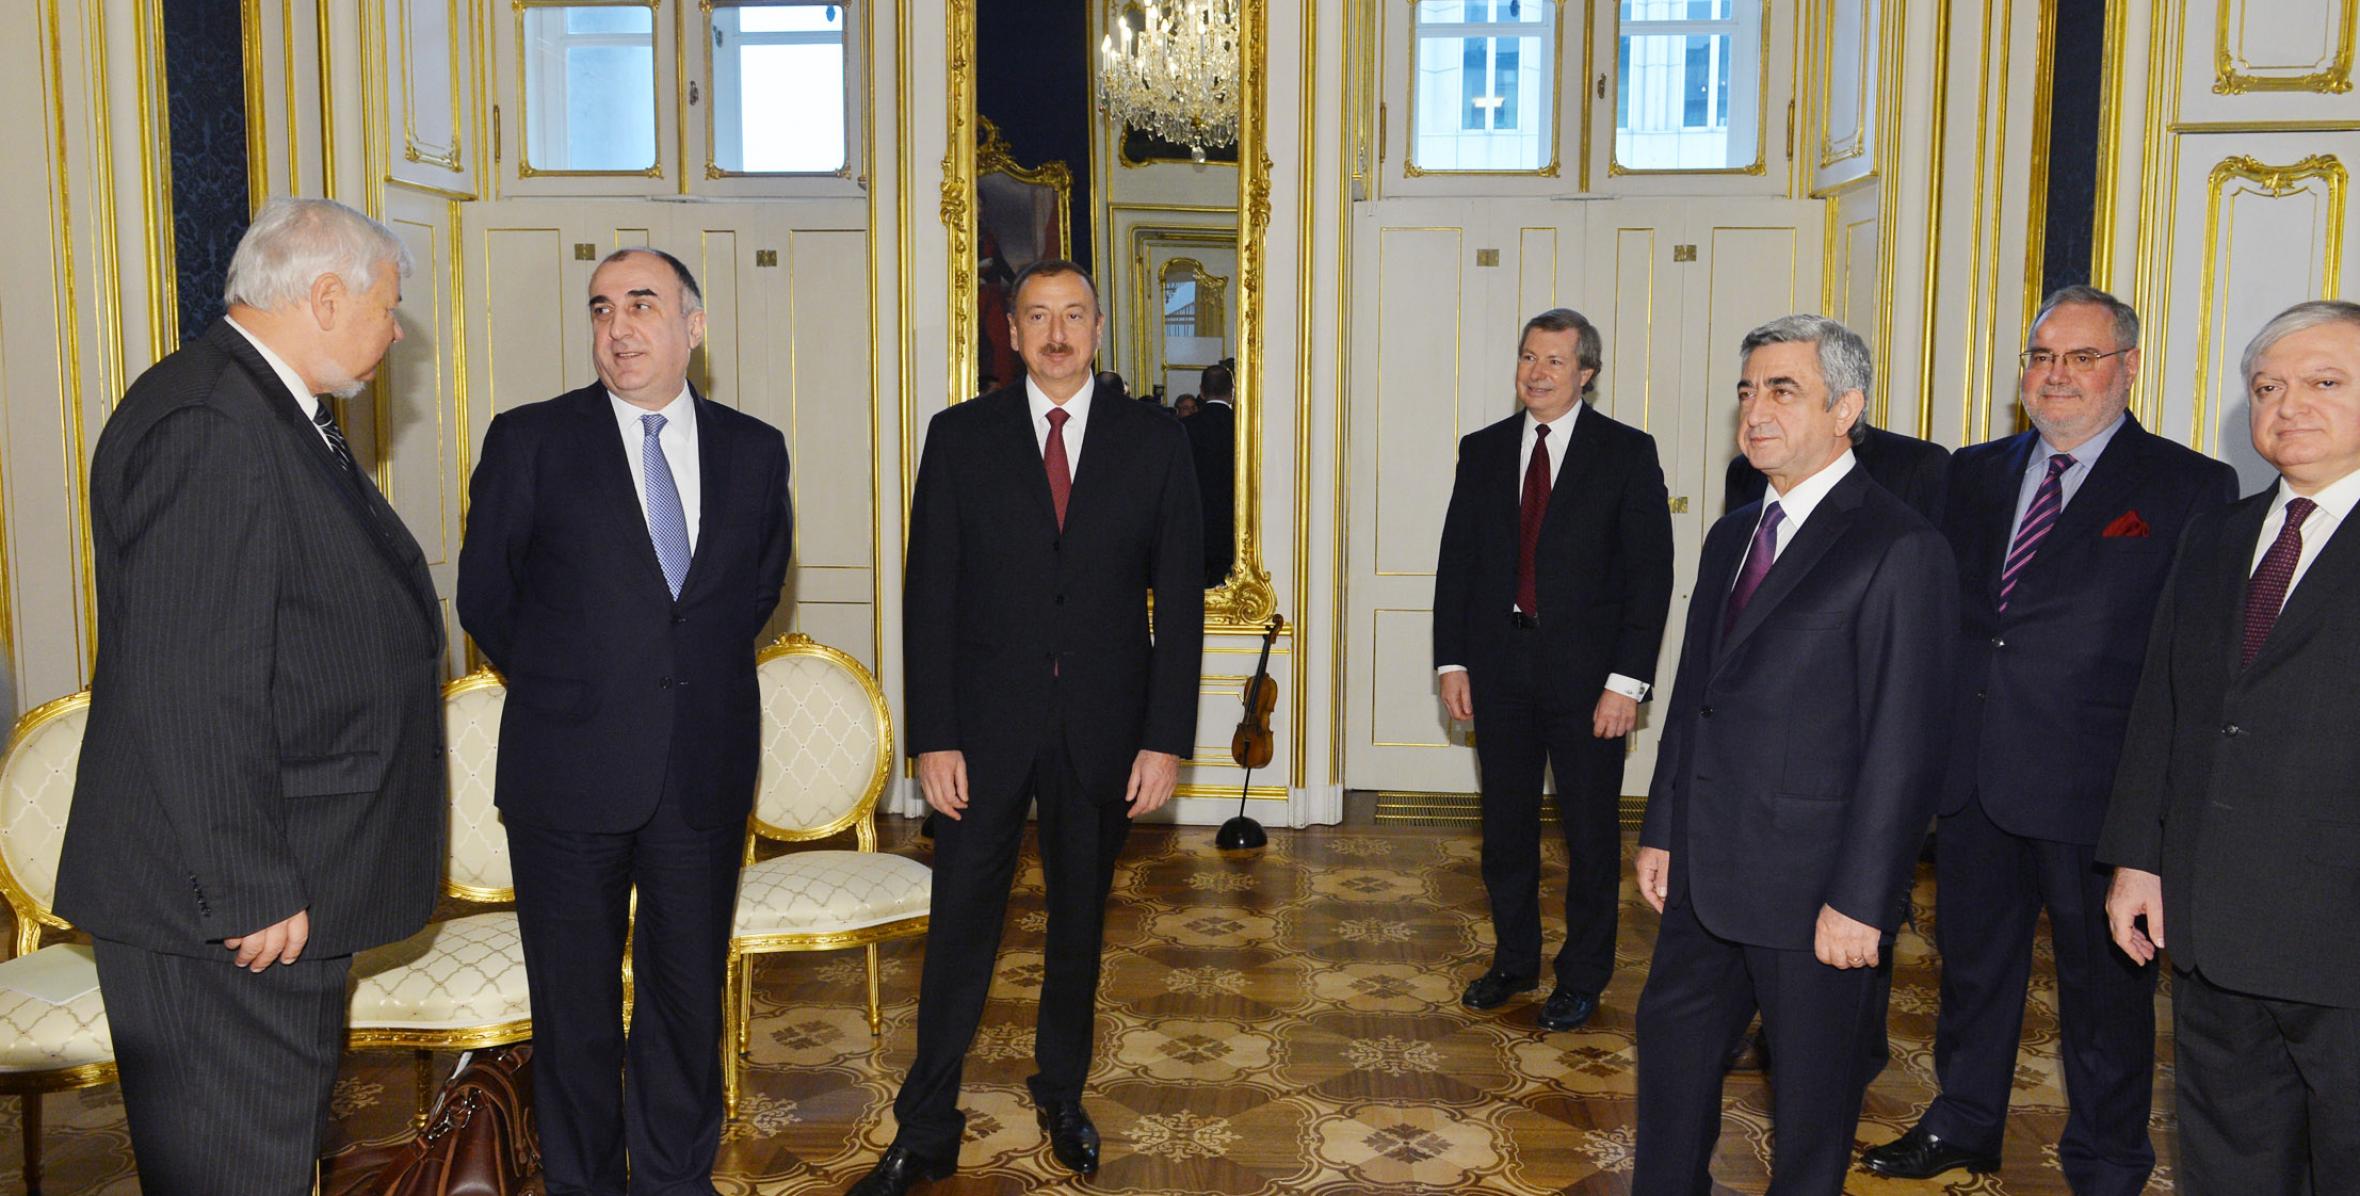 İlham Əliyev Vyanada Ermənistan Prezidenti Serj Sarkisyan ilə görüşmüşdür